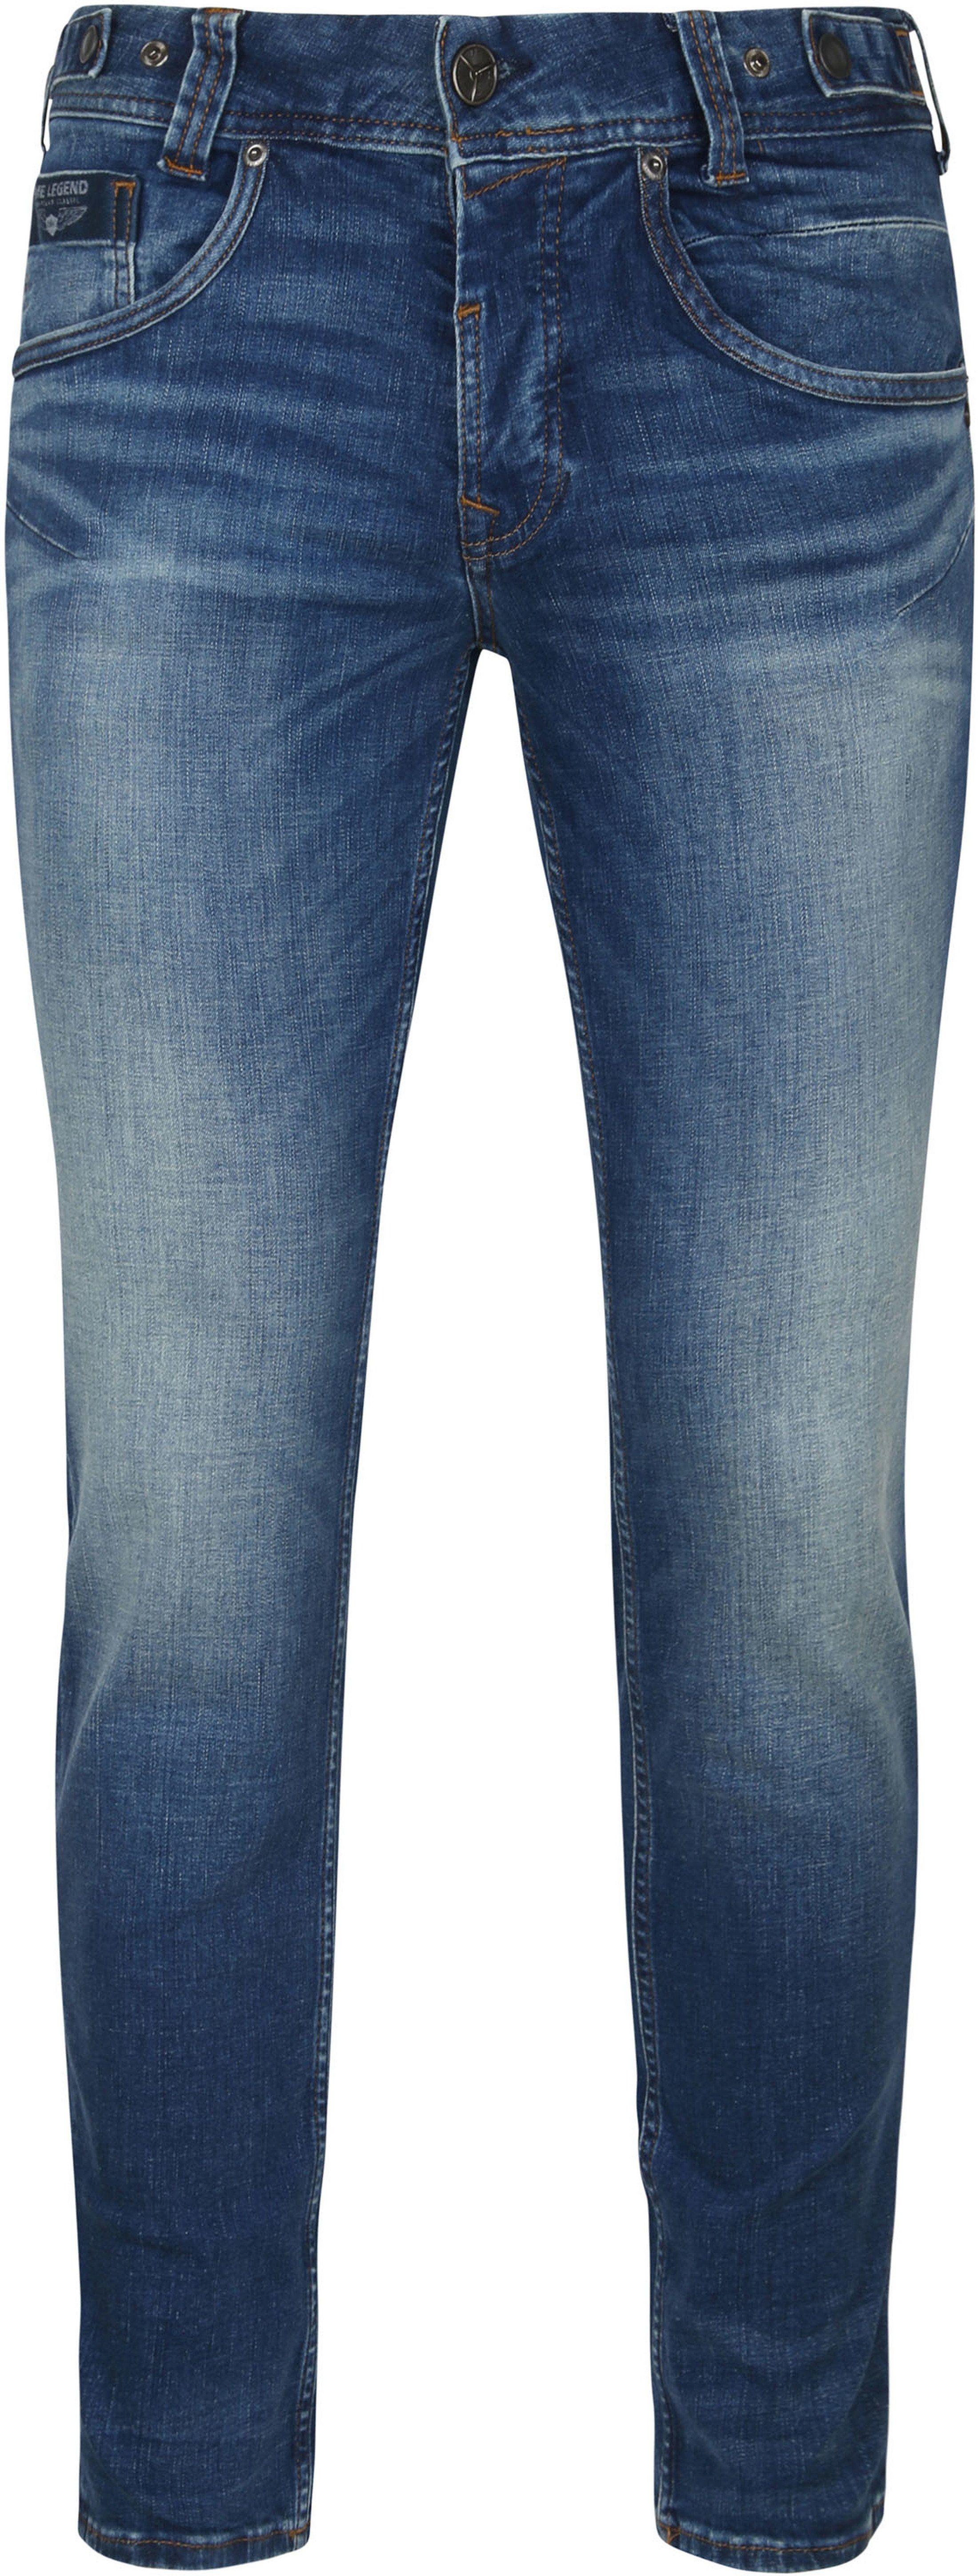 PME Legend Skyhawk Jeans Blue size W 29